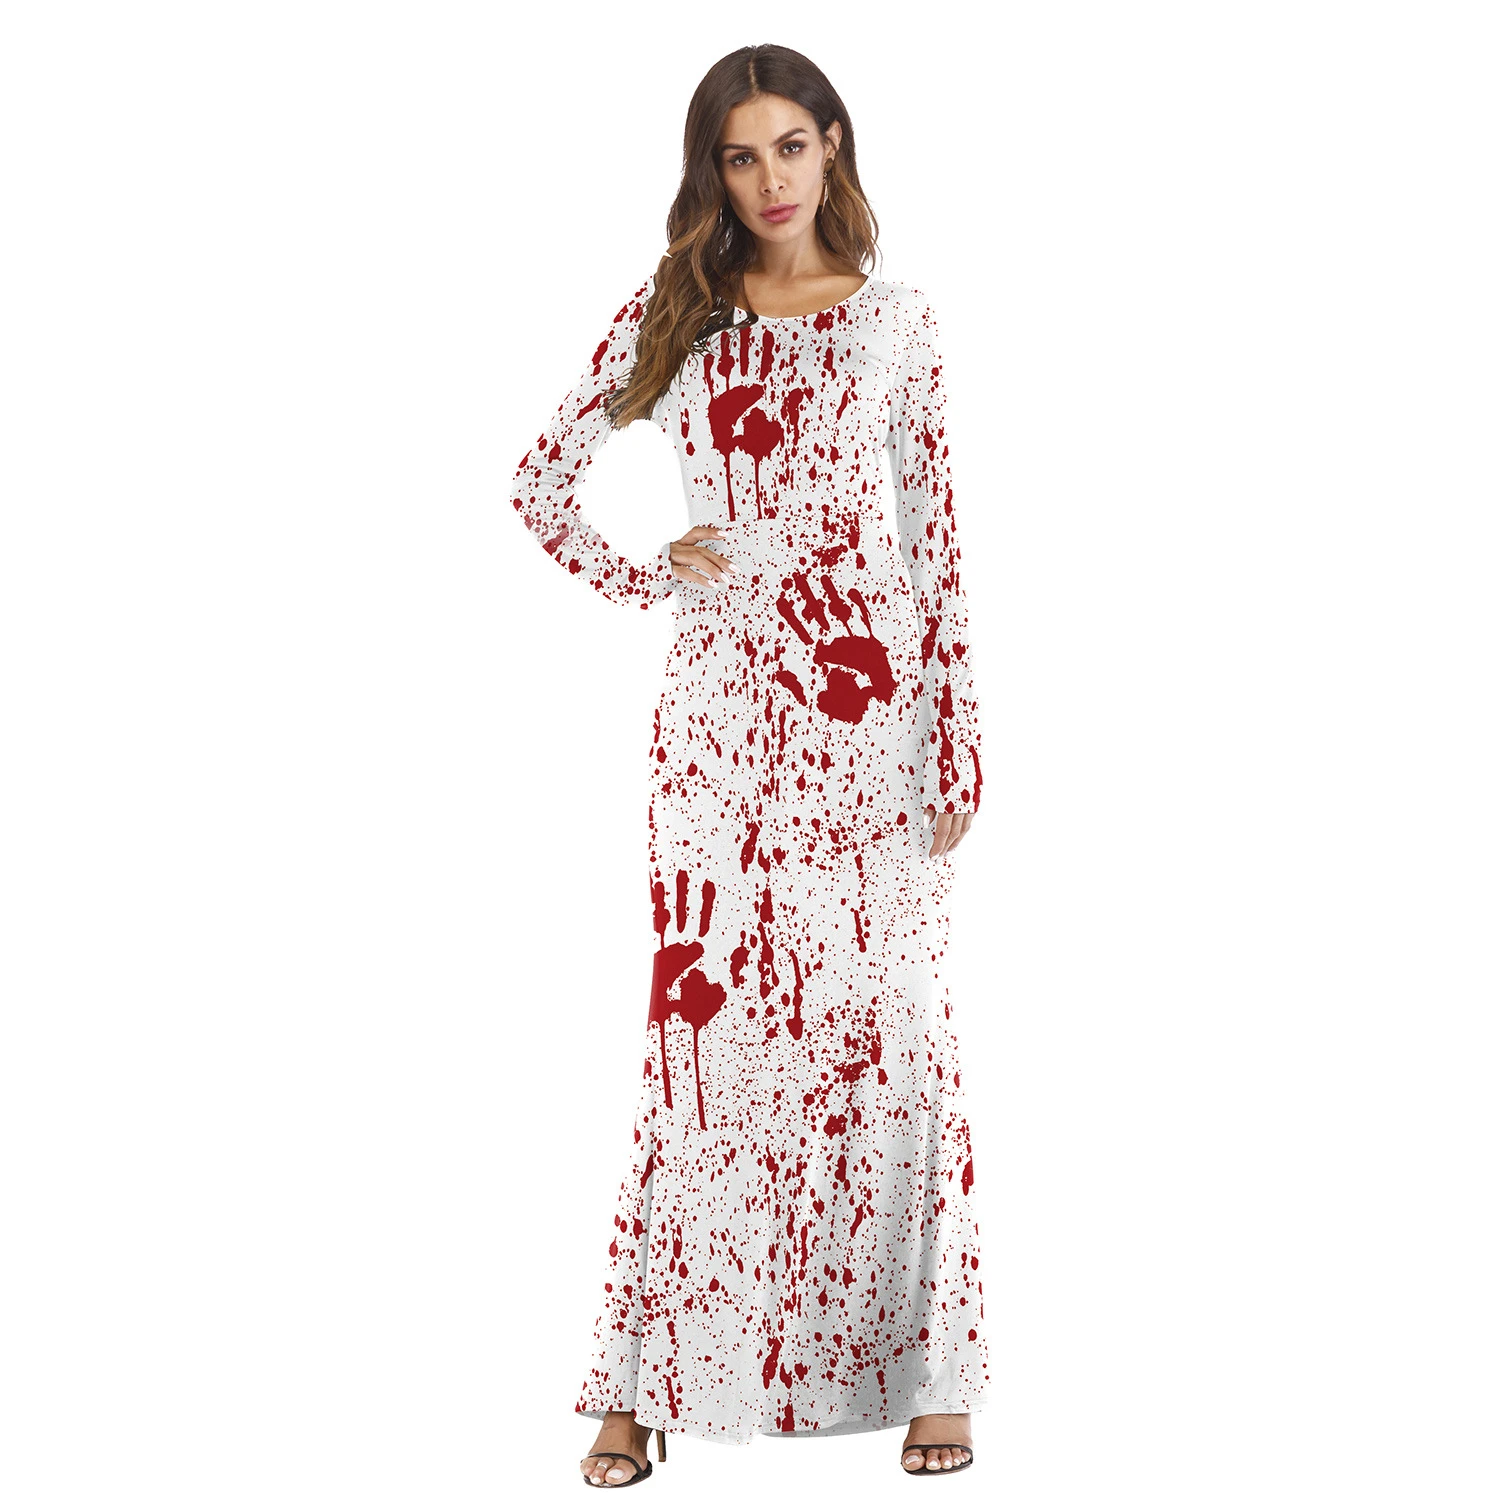 Кровавая медсестра платье для ролевых игр для женщин страшная маска на Хэллоуин униформа, косплей костюмы Сексуальное мини платье Готический маскарадный костюм